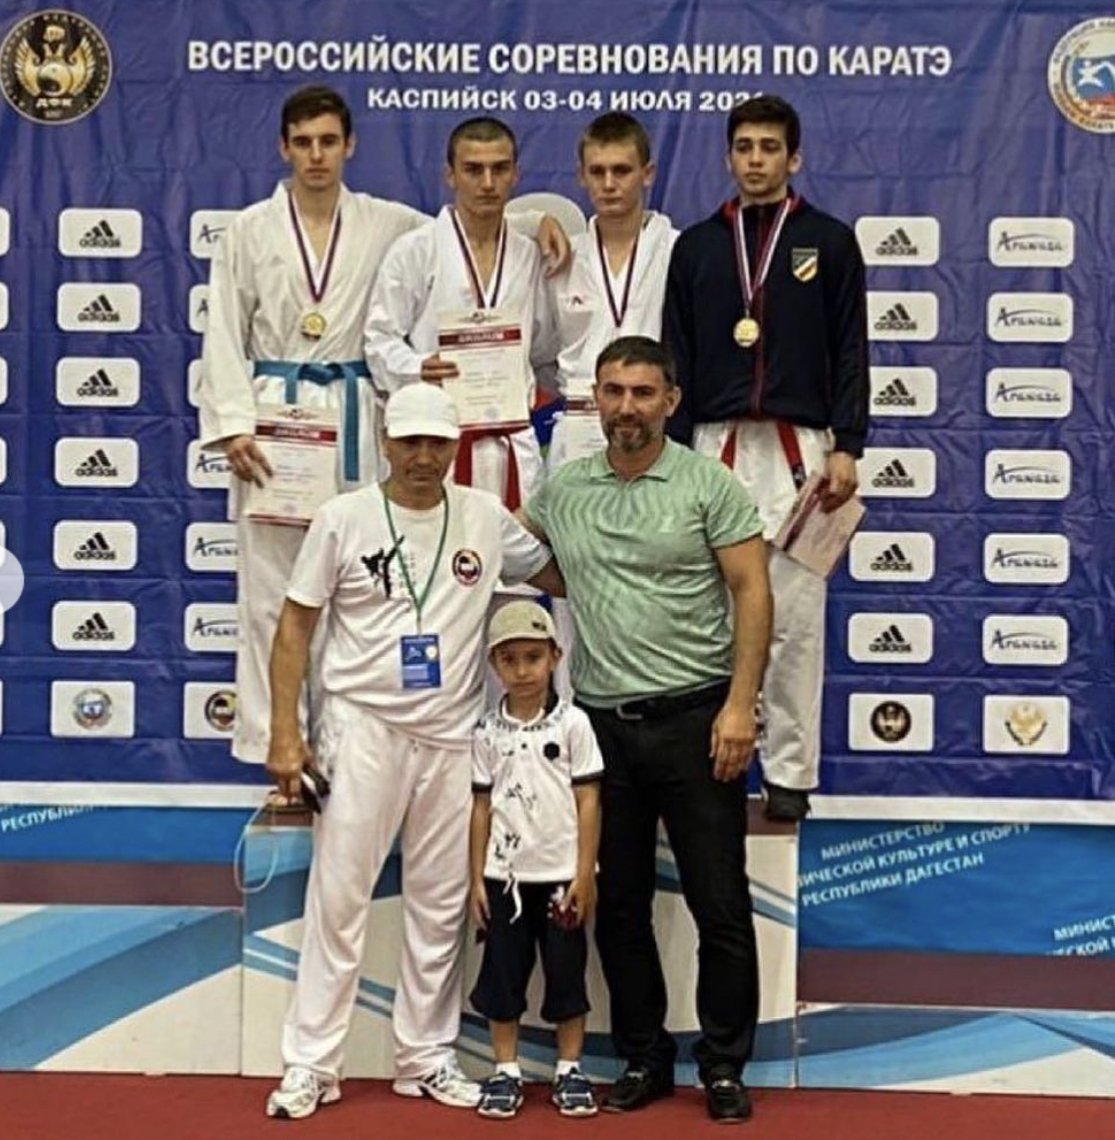 Сборная Северной Осетии по каратэ завоевала 19 наград на всероссийских соревнованиях